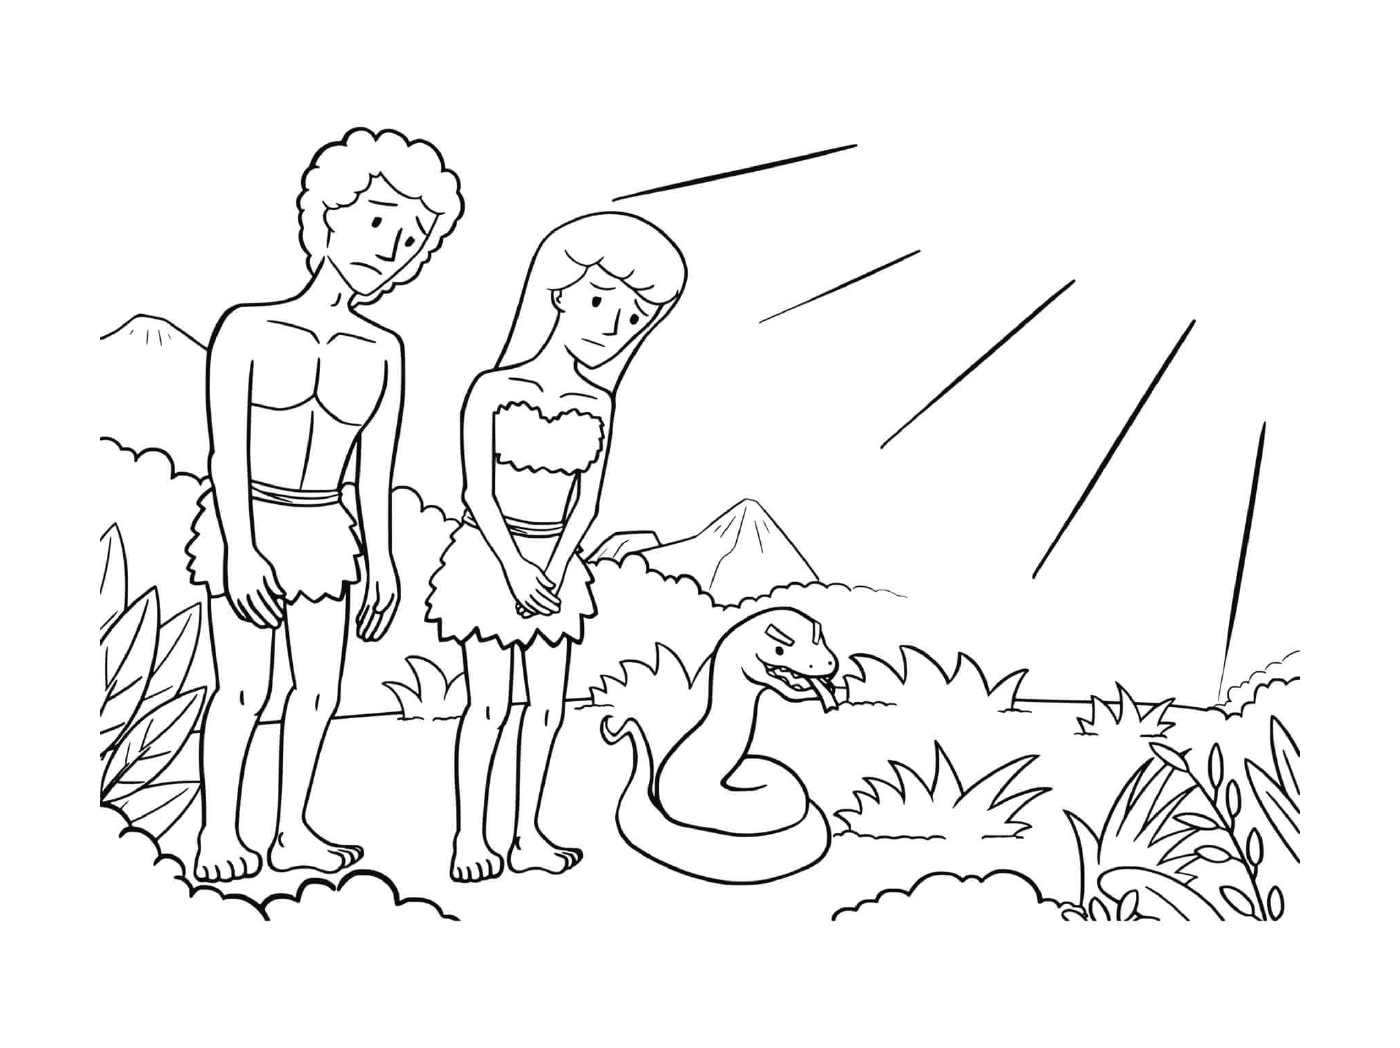   Homme et femme debout à côté d'un serpent 